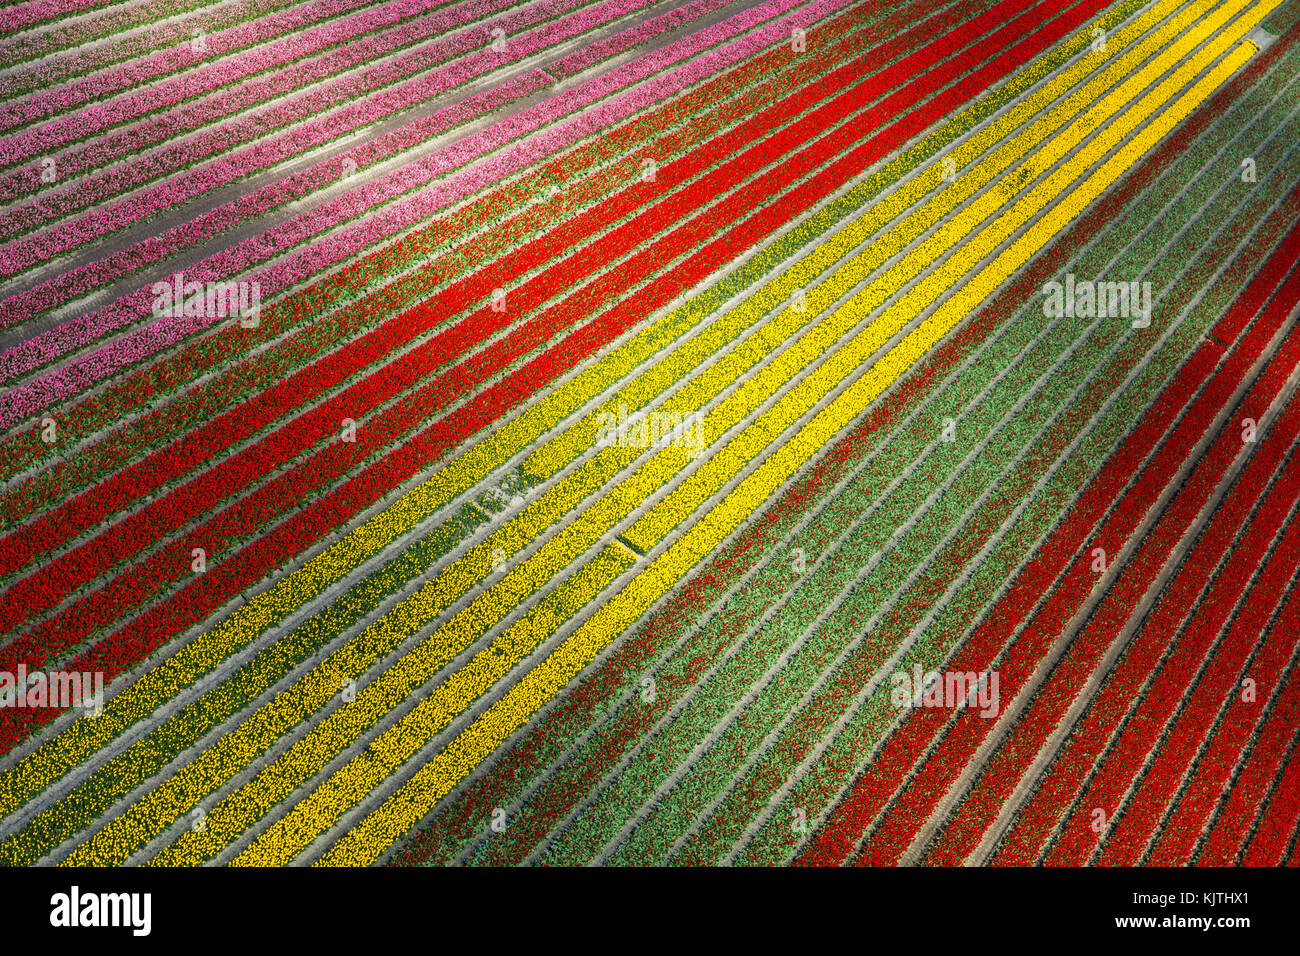 Vue aérienne du champs de tulipes en Hollande du Nord, Pays-Bas Banque D'Images